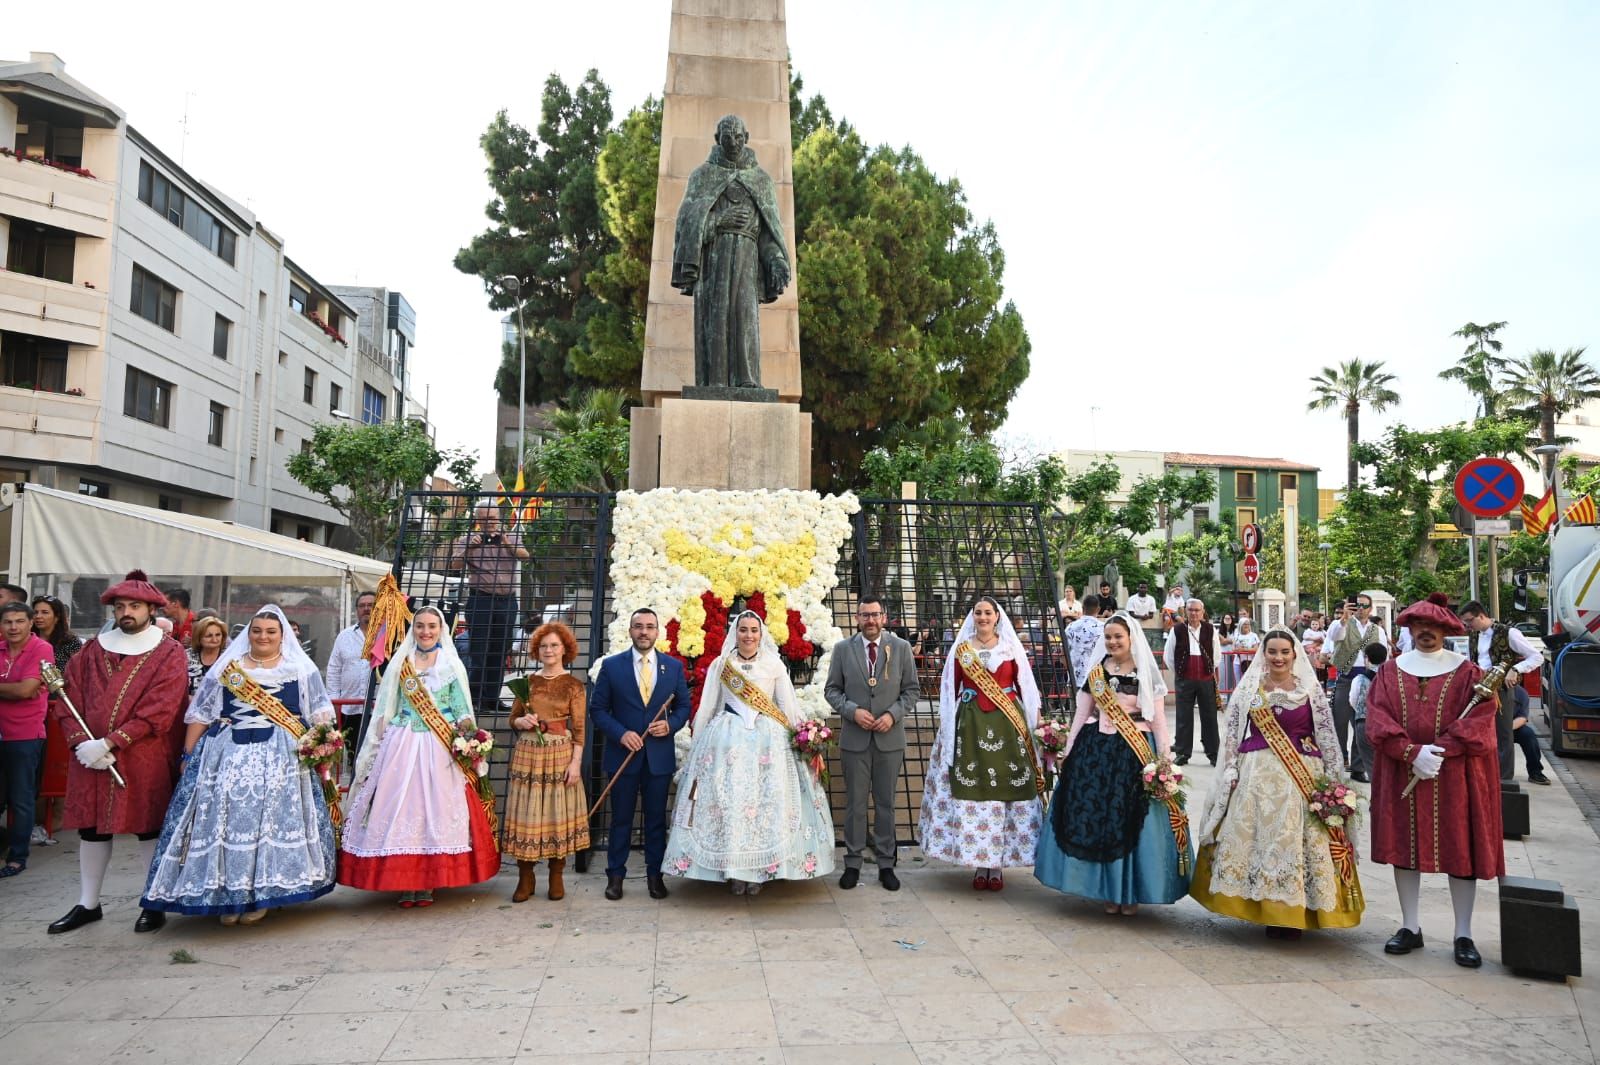 Las imágenes de la ofrenda al patrón de Vila-real, Sant Pasqual, del 2022